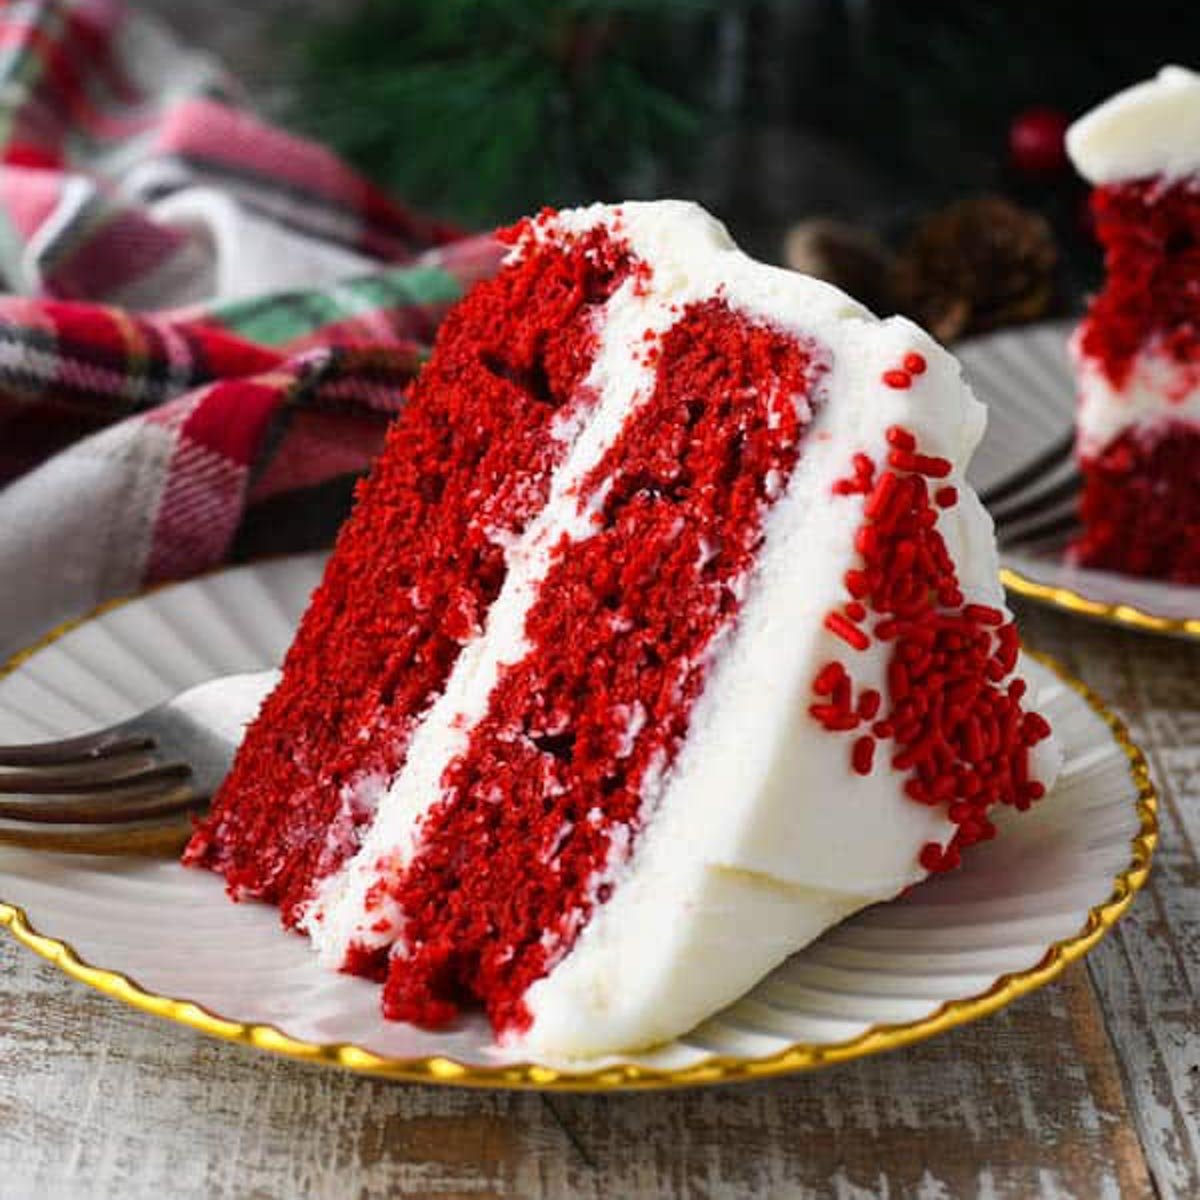 Best Southern Red Velvet Cake Recipe